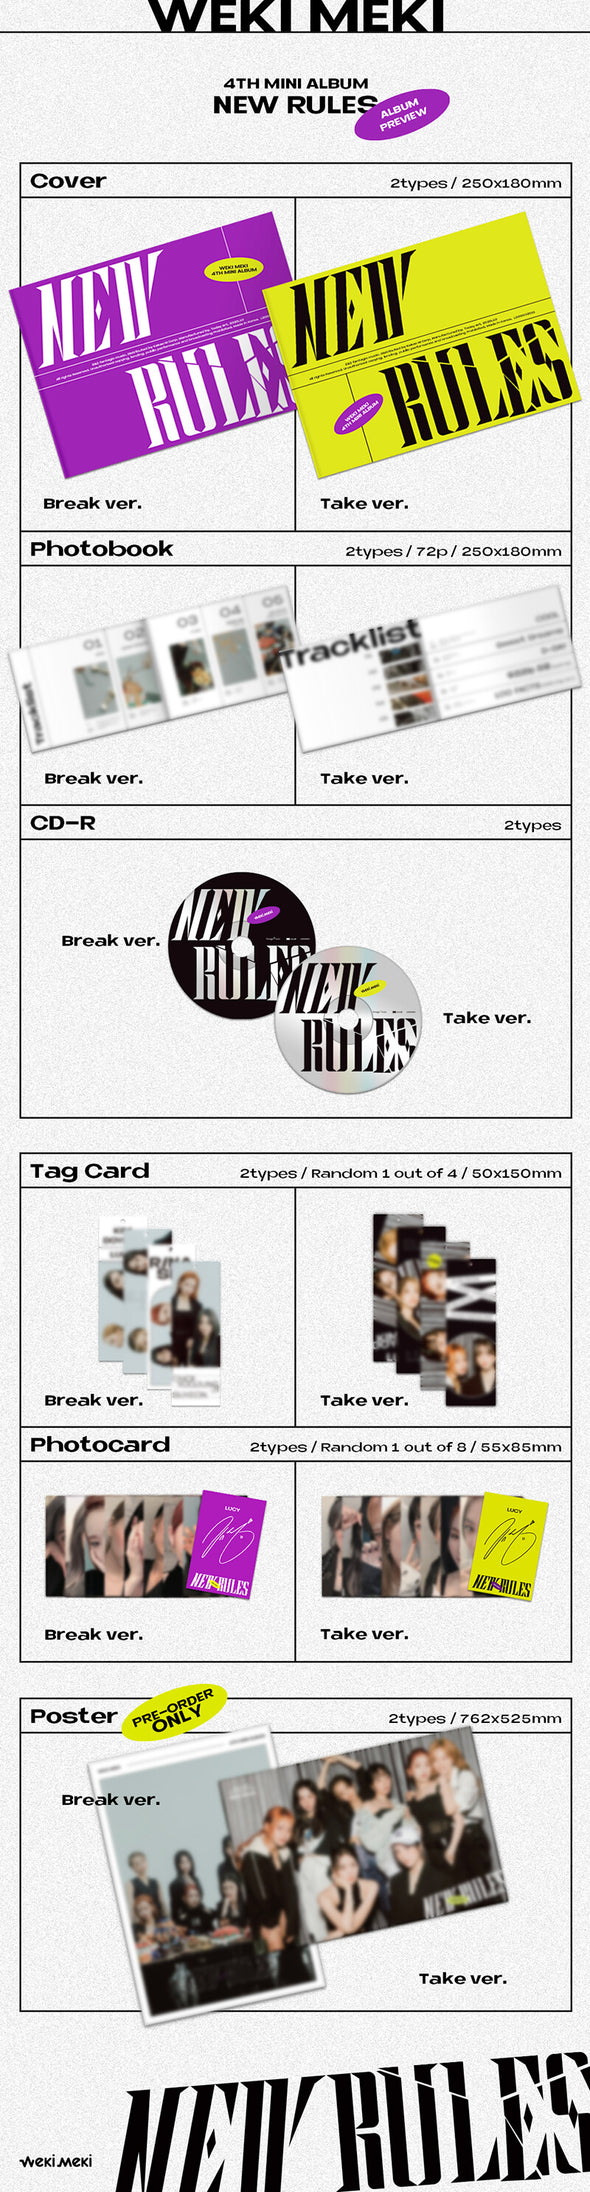 WEKI MEKI - 4th Mini Album 'New Rules'